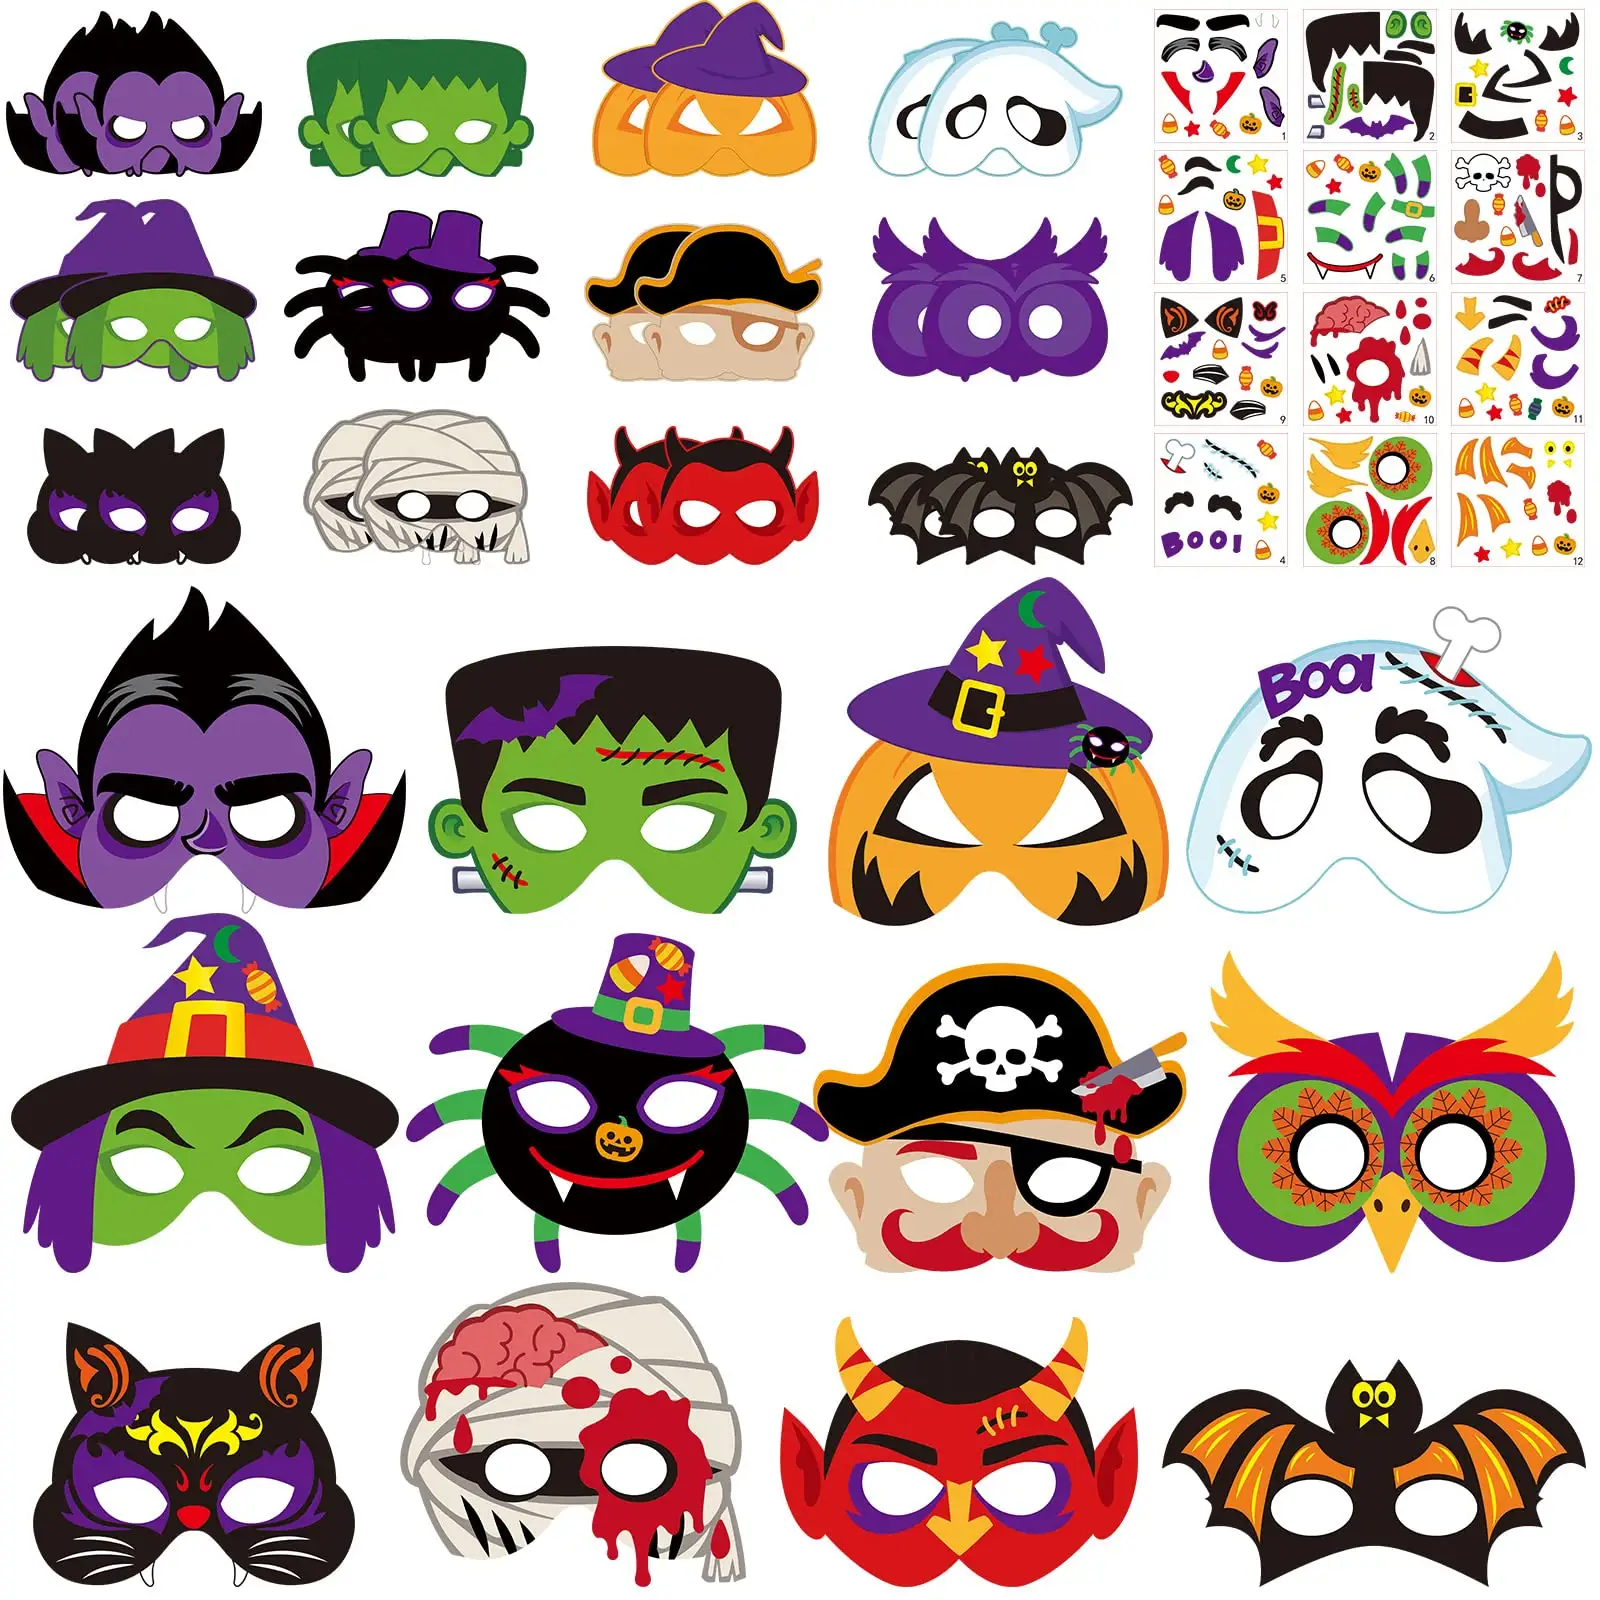 Halloween Mask Craft Kit Pumpkin Witch Bat Spider Pirate Halloween DIY Halloween Paper Mask for Party Kids Activities Supplies